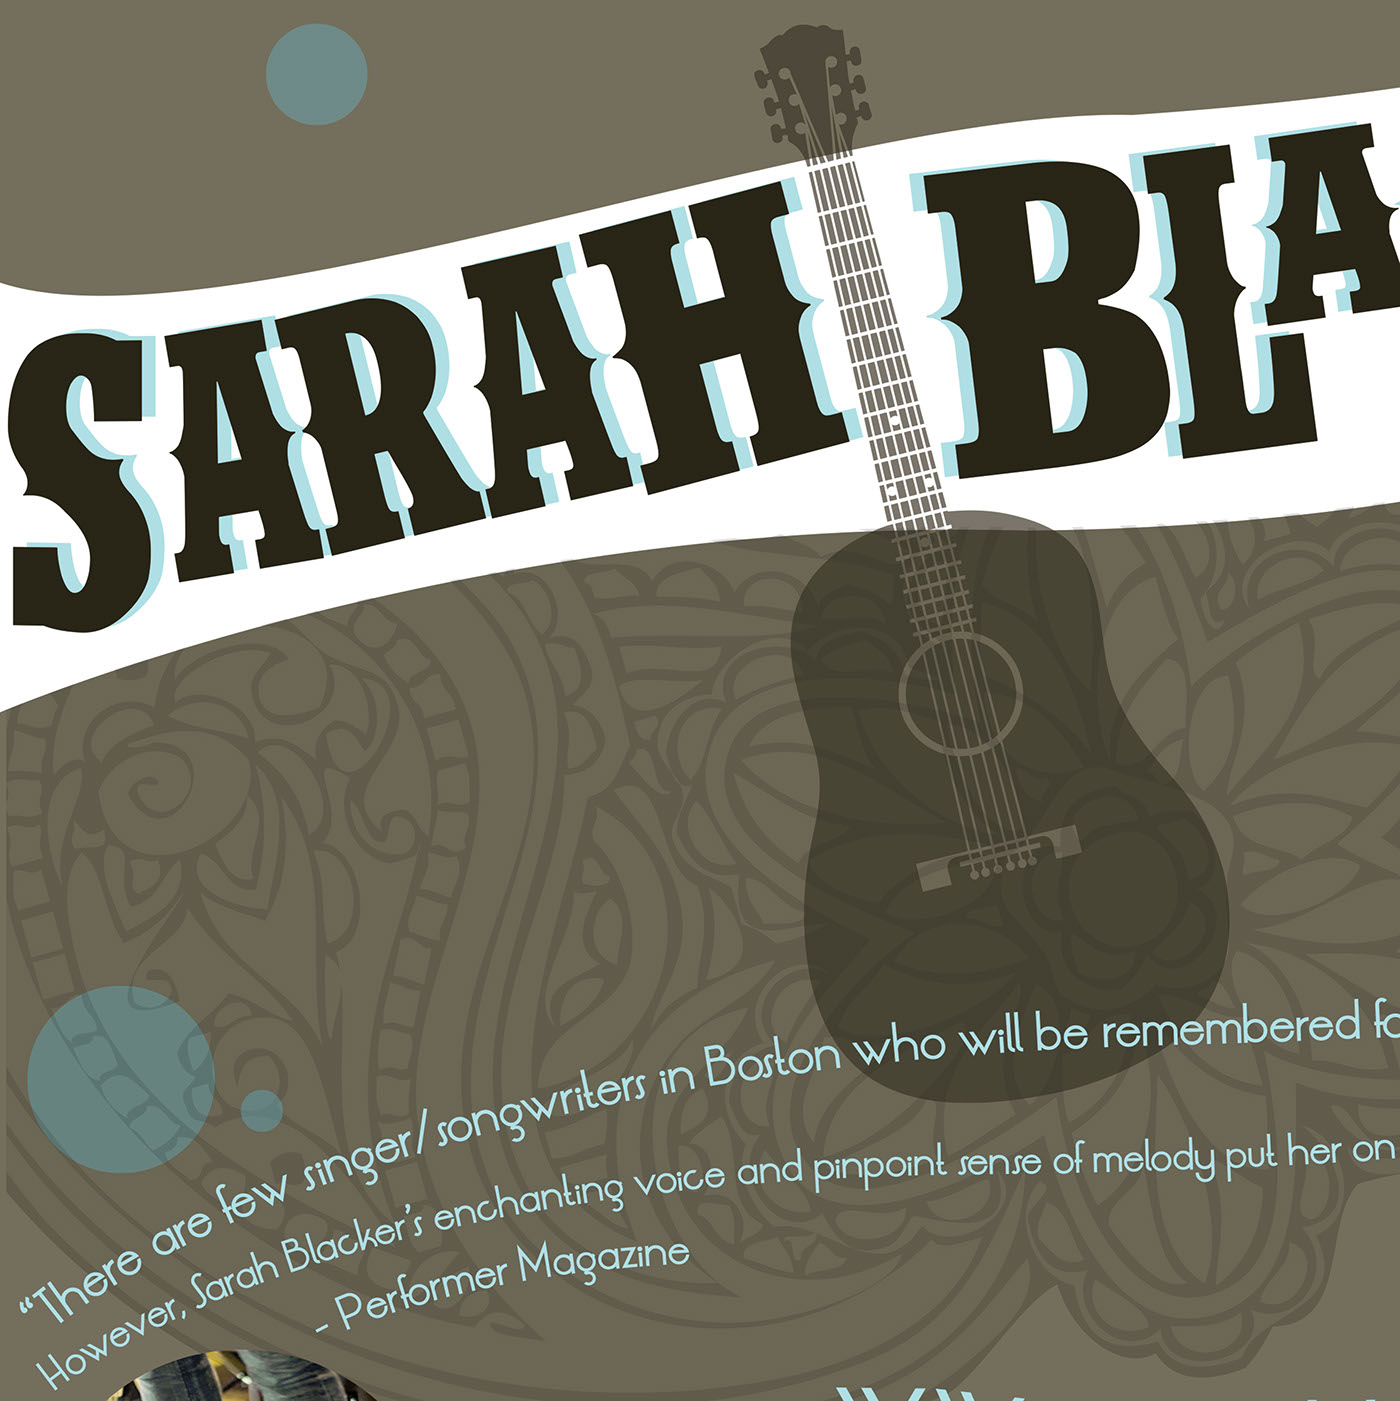  Concert tour sarah blacker poster design perform